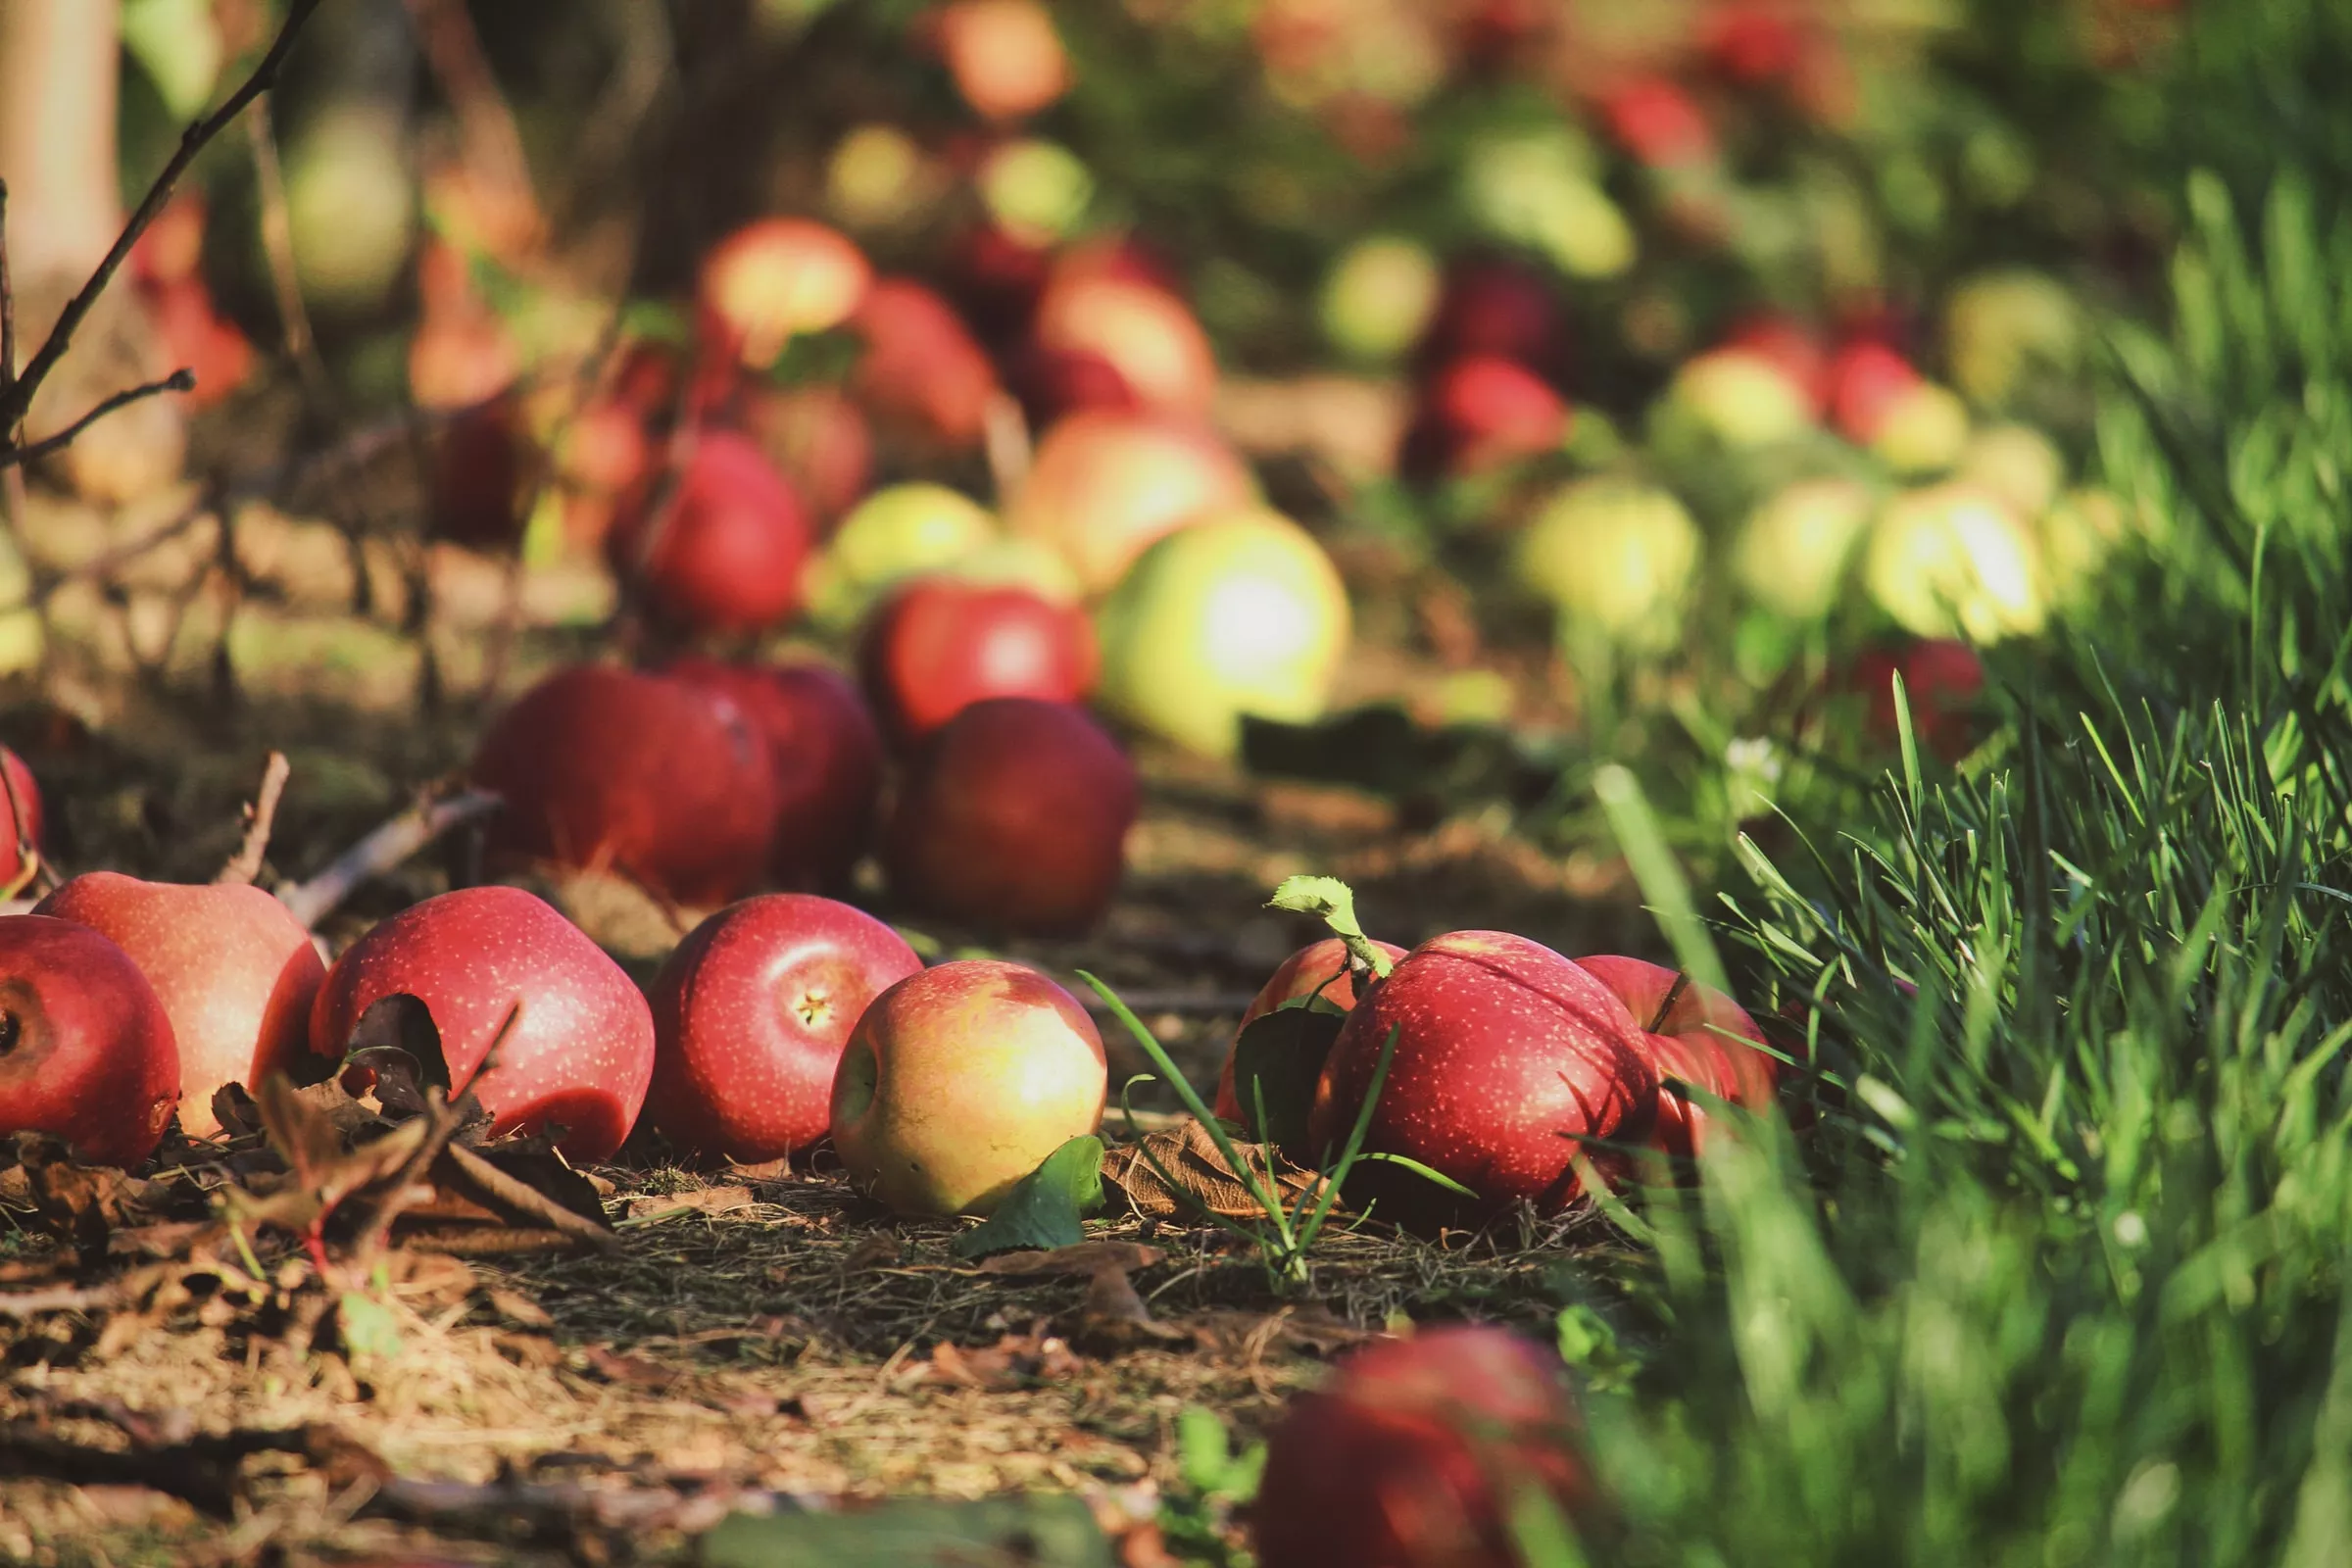 Червоні яблука сорту "Айдаред" – одні з найкращих у плані профілактики раку